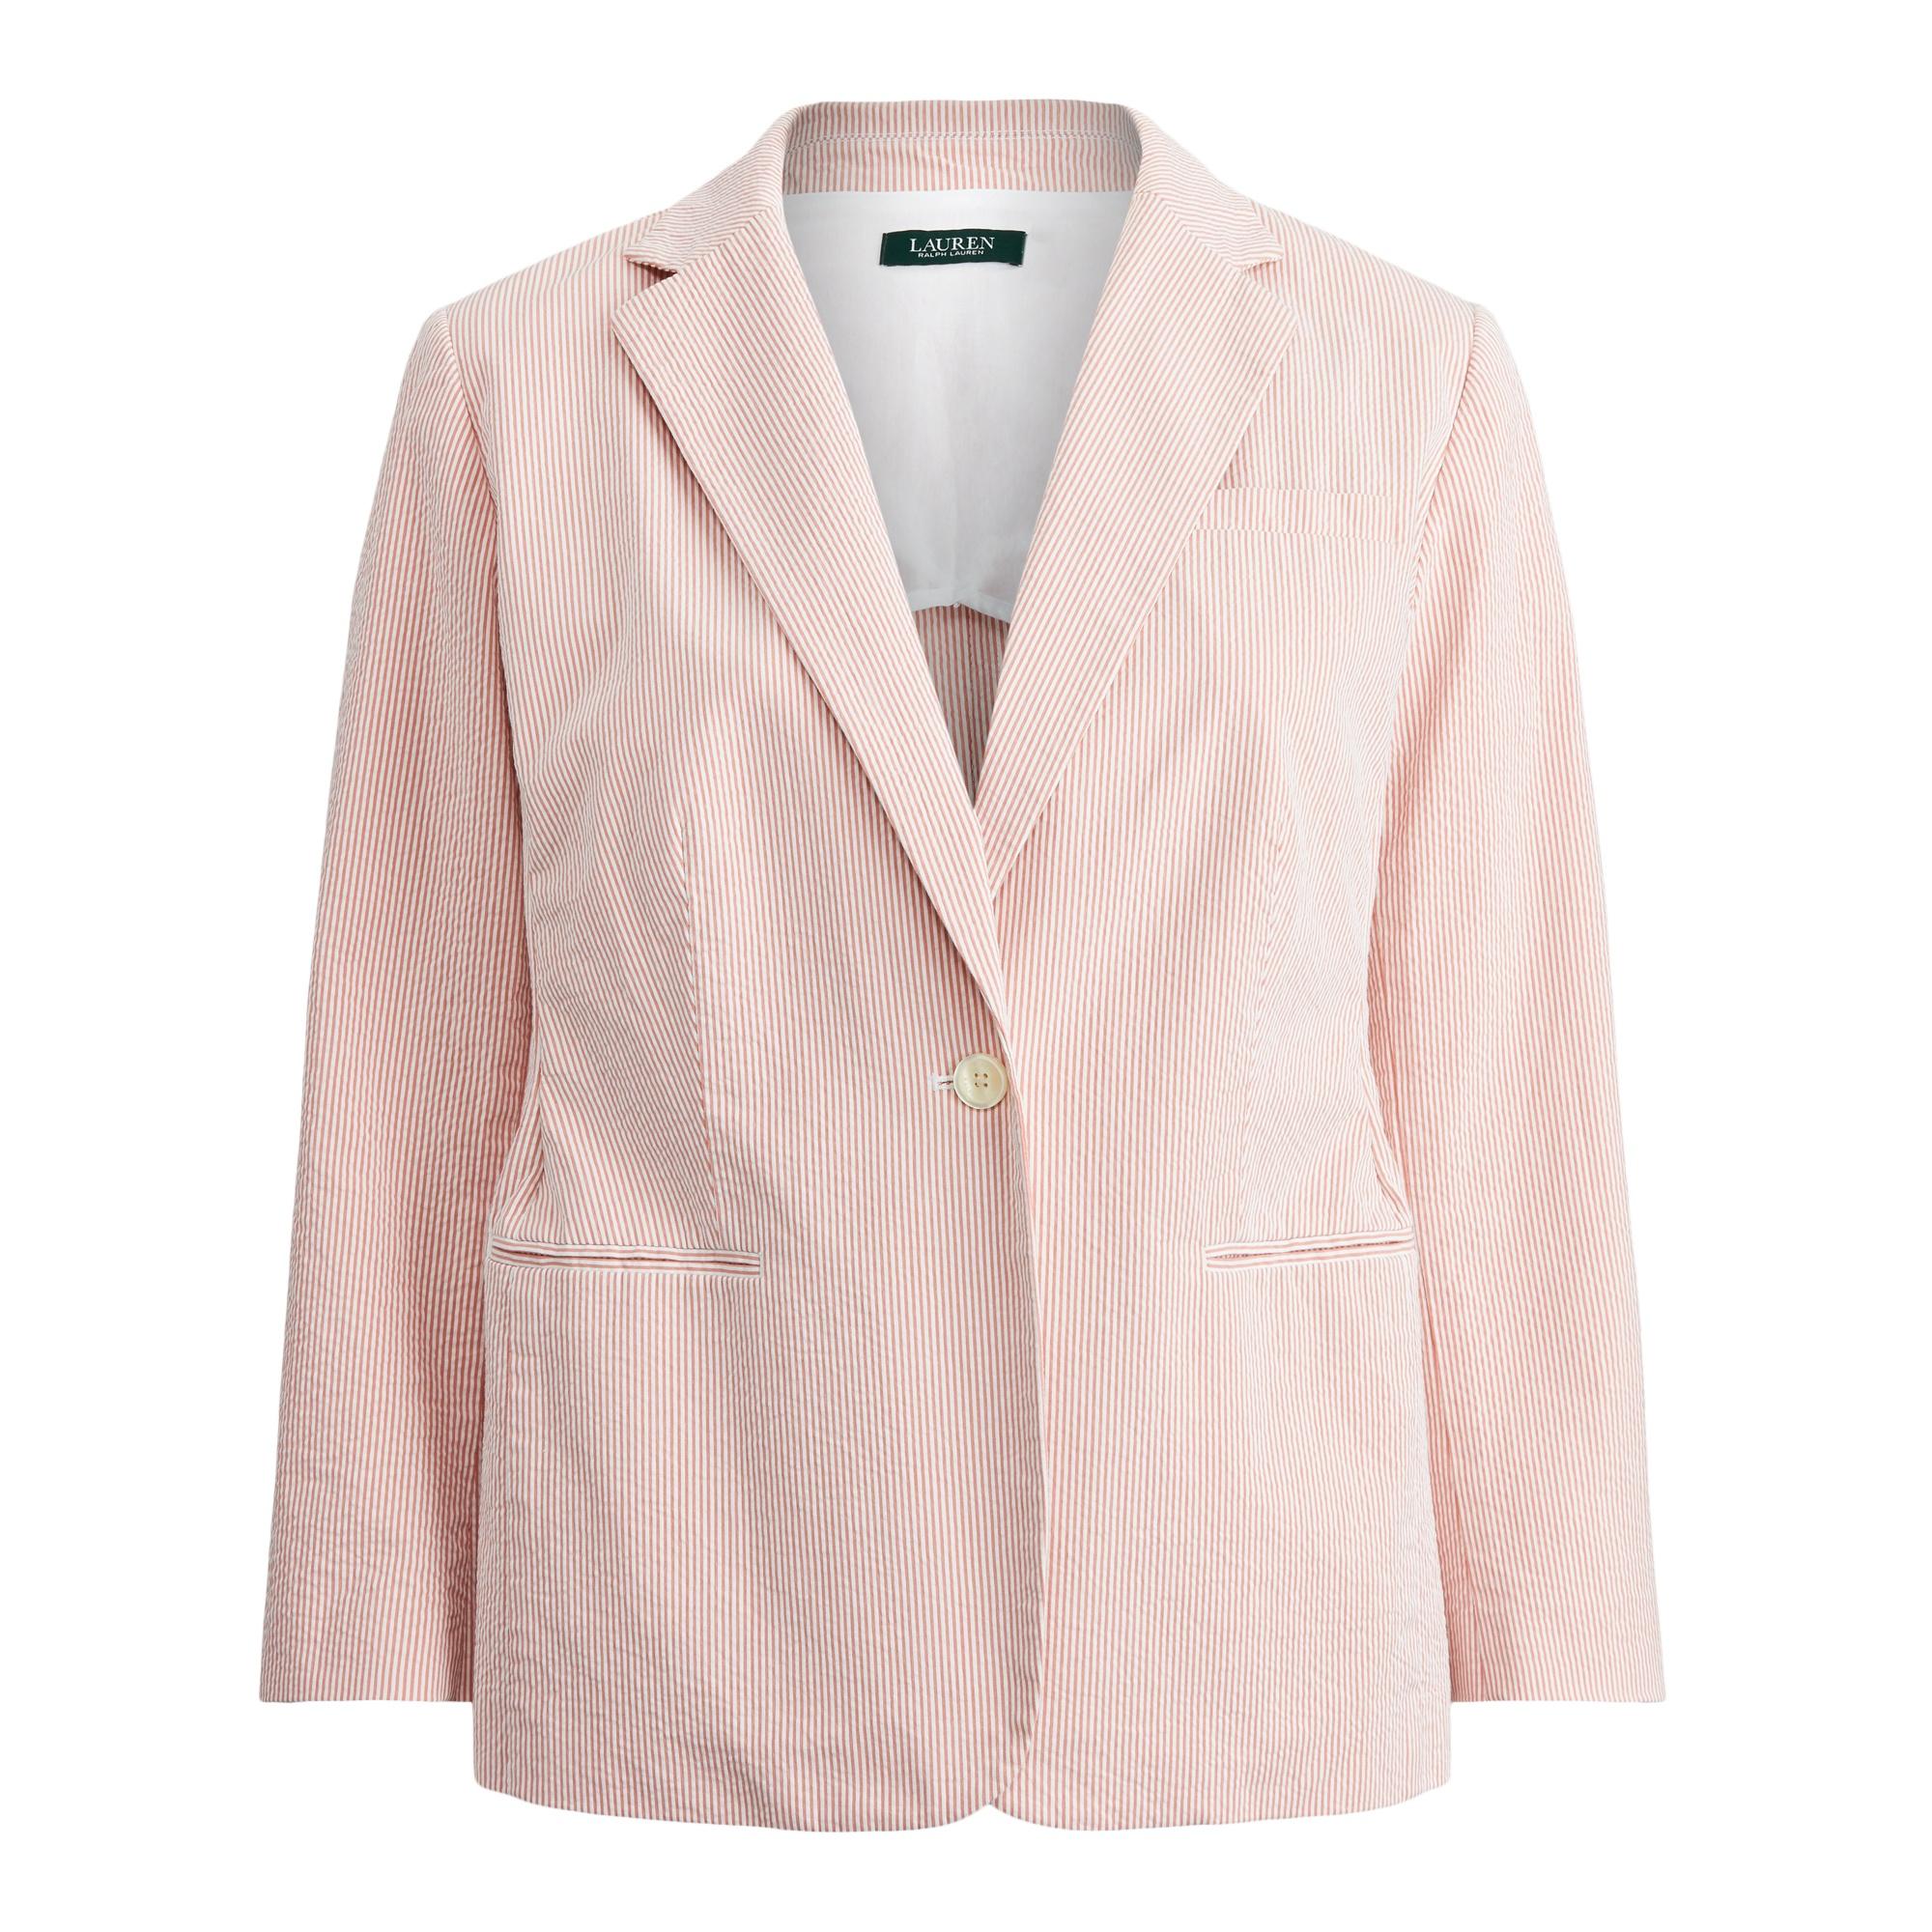 Ralph Lauren Cotton Seersucker Jacket in Pink - Lyst